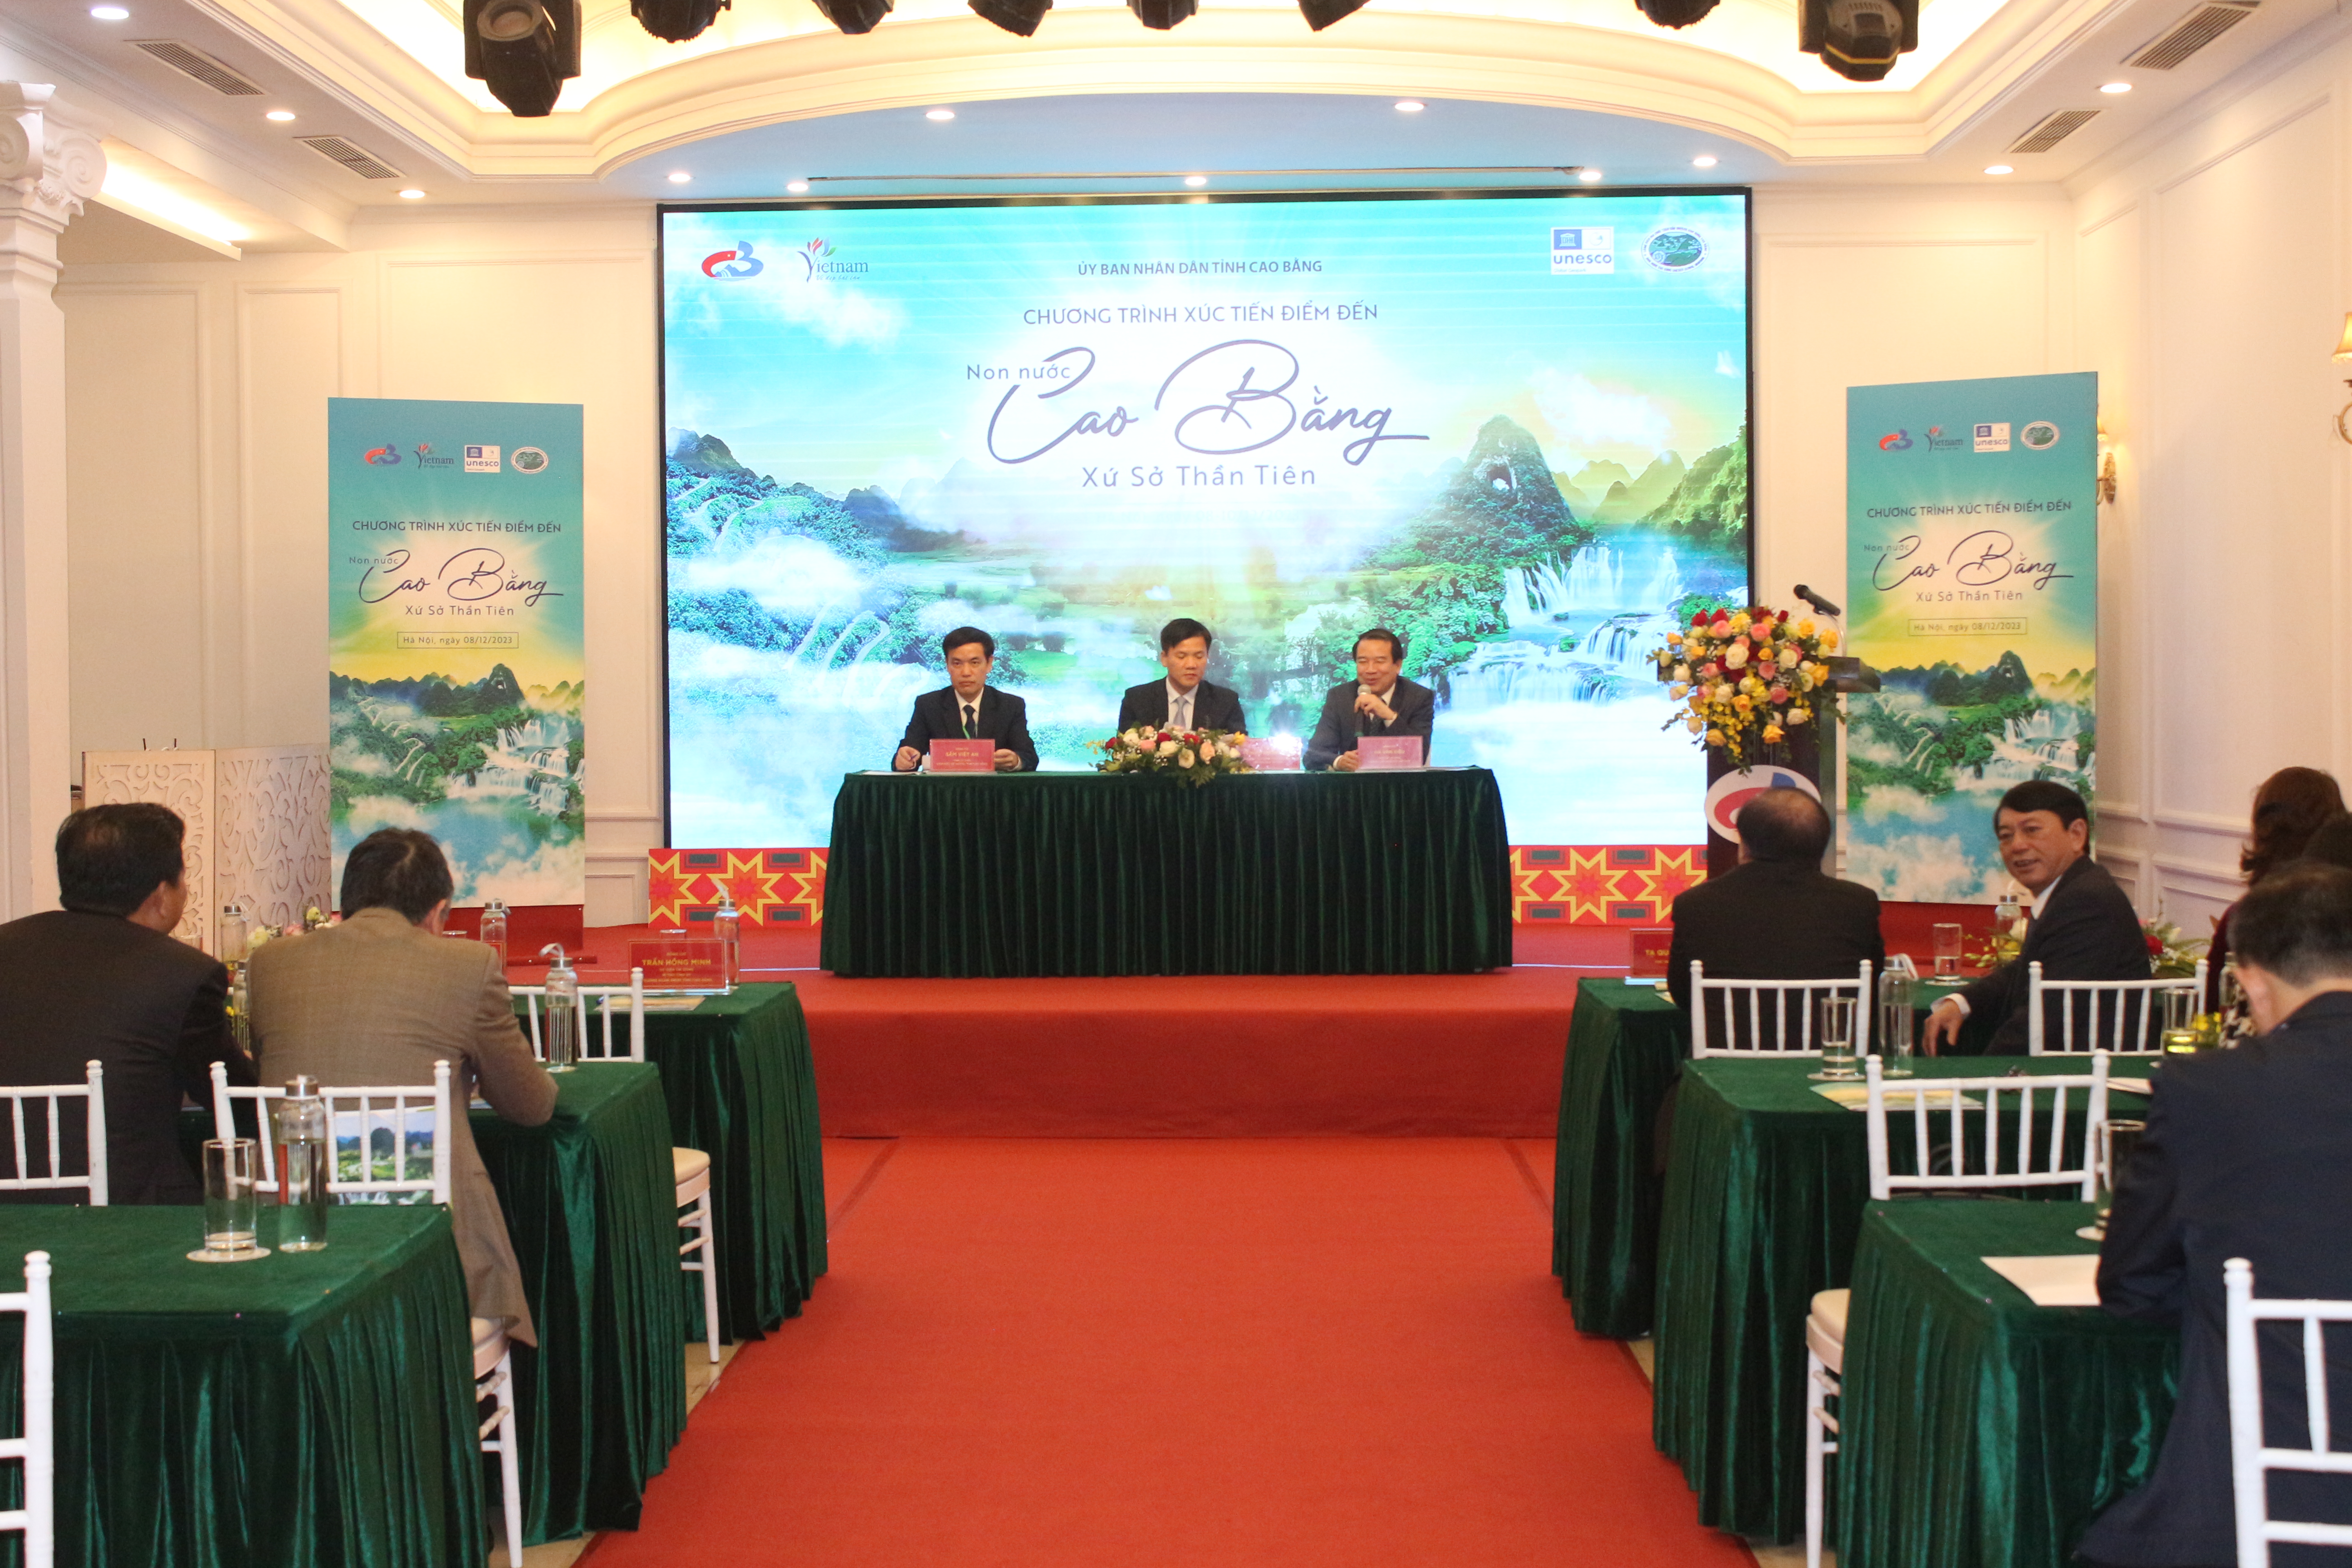 Phó Cục trưởng Cục Du lịch Quốc gia Việt Nam Hà Văn Siêu tham gia điều hành phiên trao đổi tại Chương trình xúc tiến điểm đến “Non nước Cao Bằng - Xứ sở thần tiên”